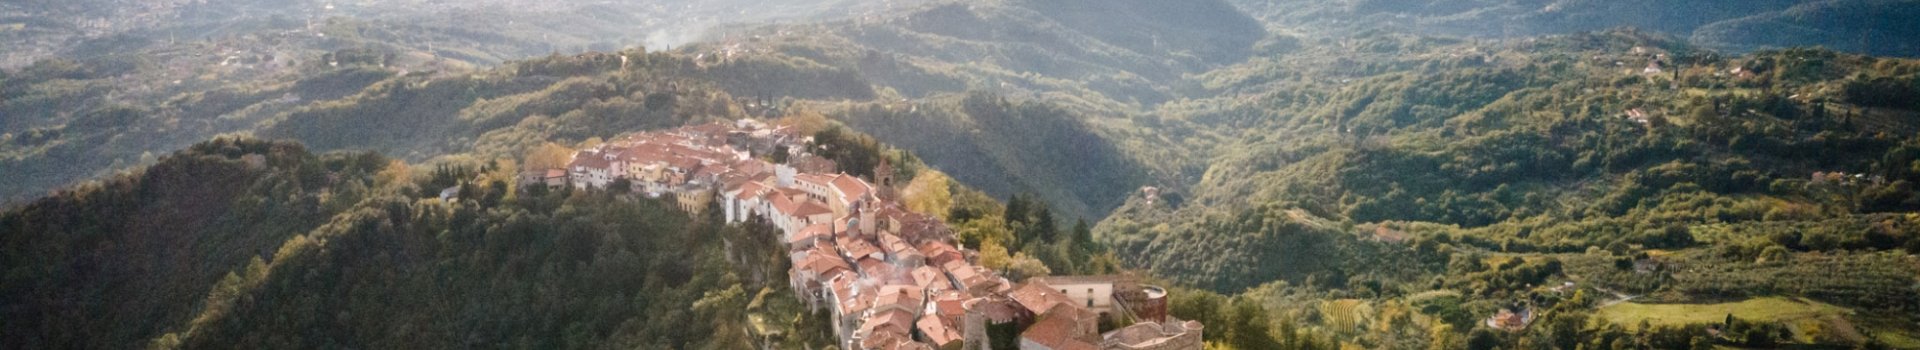 Vista del pueblo de Fosdinovo y del Mar de Liguria